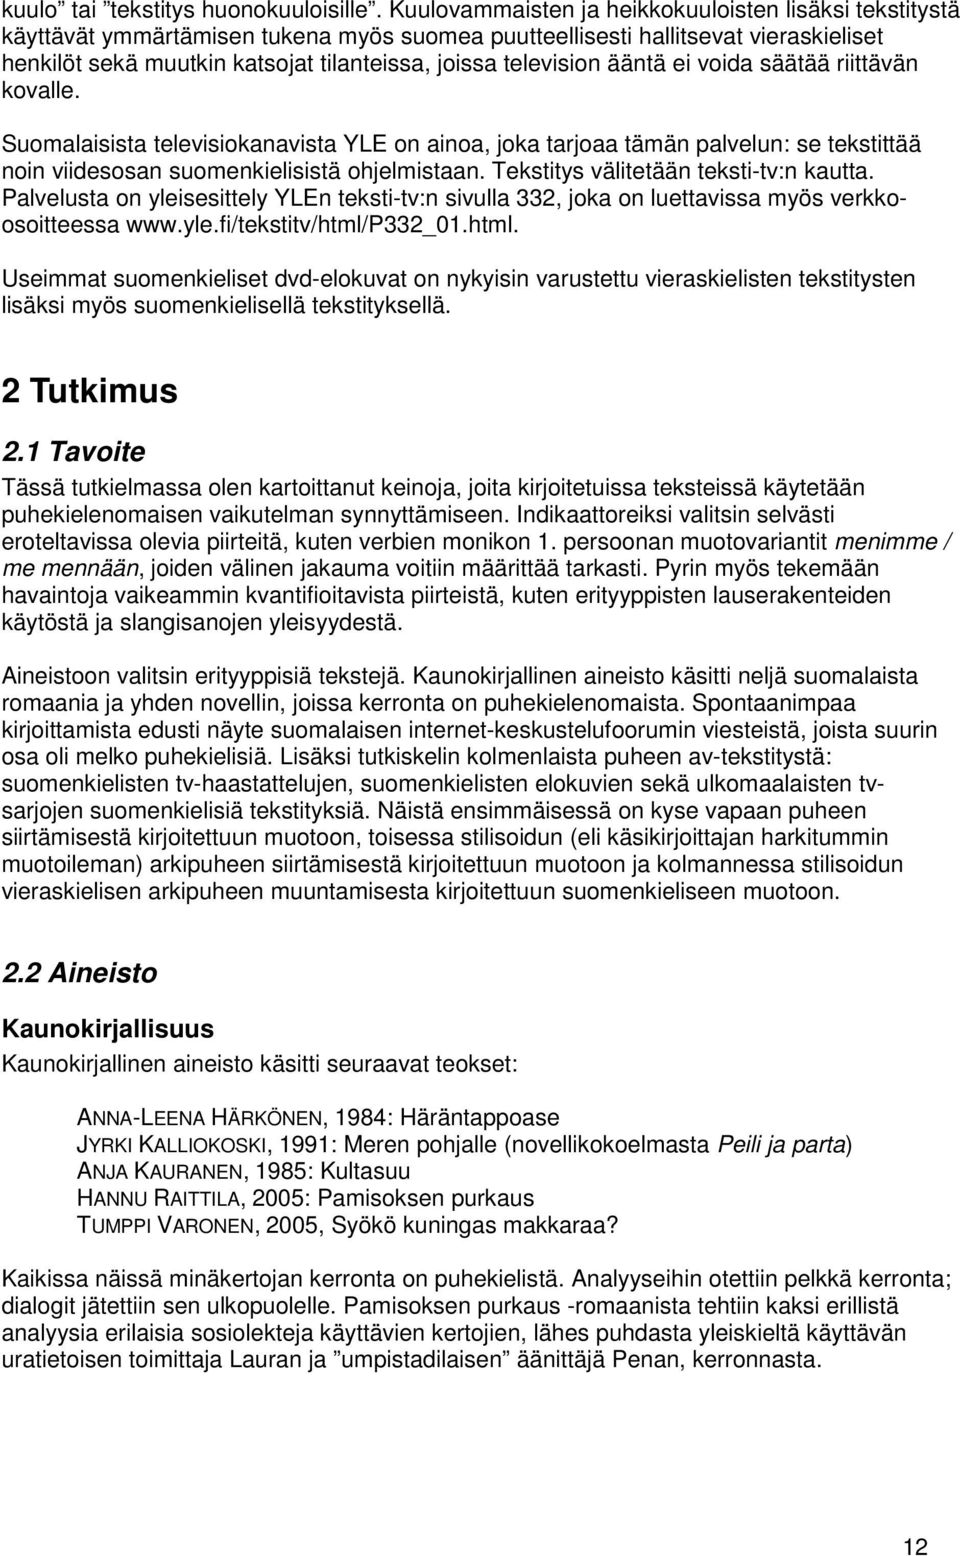 television ääntä ei voida säätää riittävän kovalle. Suomalaisista televisiokanavista YLE on ainoa, joka tarjoaa tämän palvelun: se tekstittää noin viidesosan suomenkielisistä ohjelmistaan.